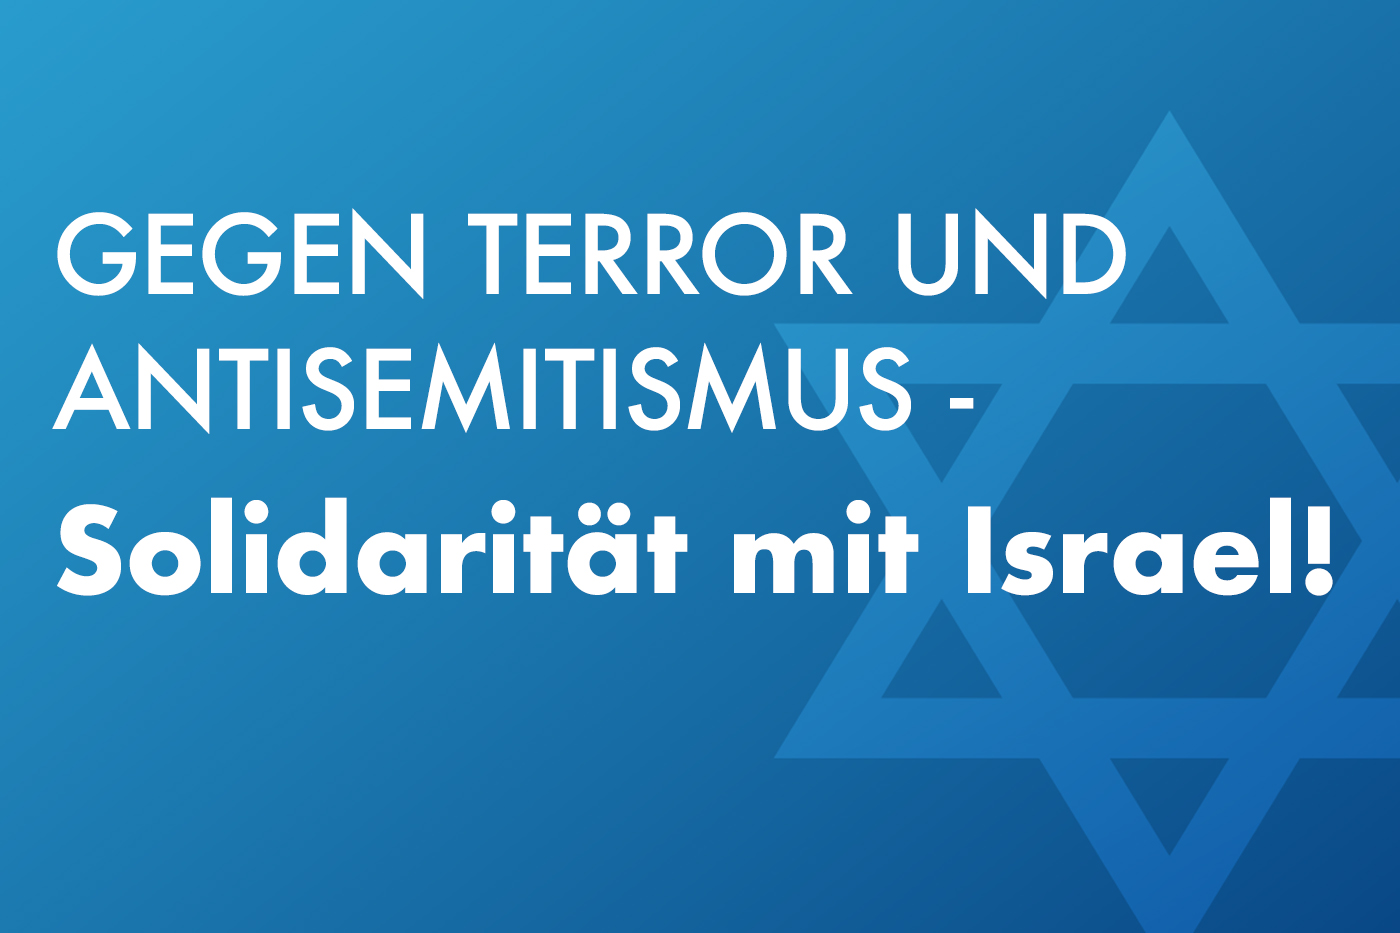 Gegen Terror und Antisemitismus - Solidarität mit Israel! Der Schriftzug steht mit weißer Schrift auf blauem Hintergrund. Im Rechten Bildbereich ist ein Davidstern zu sehen.